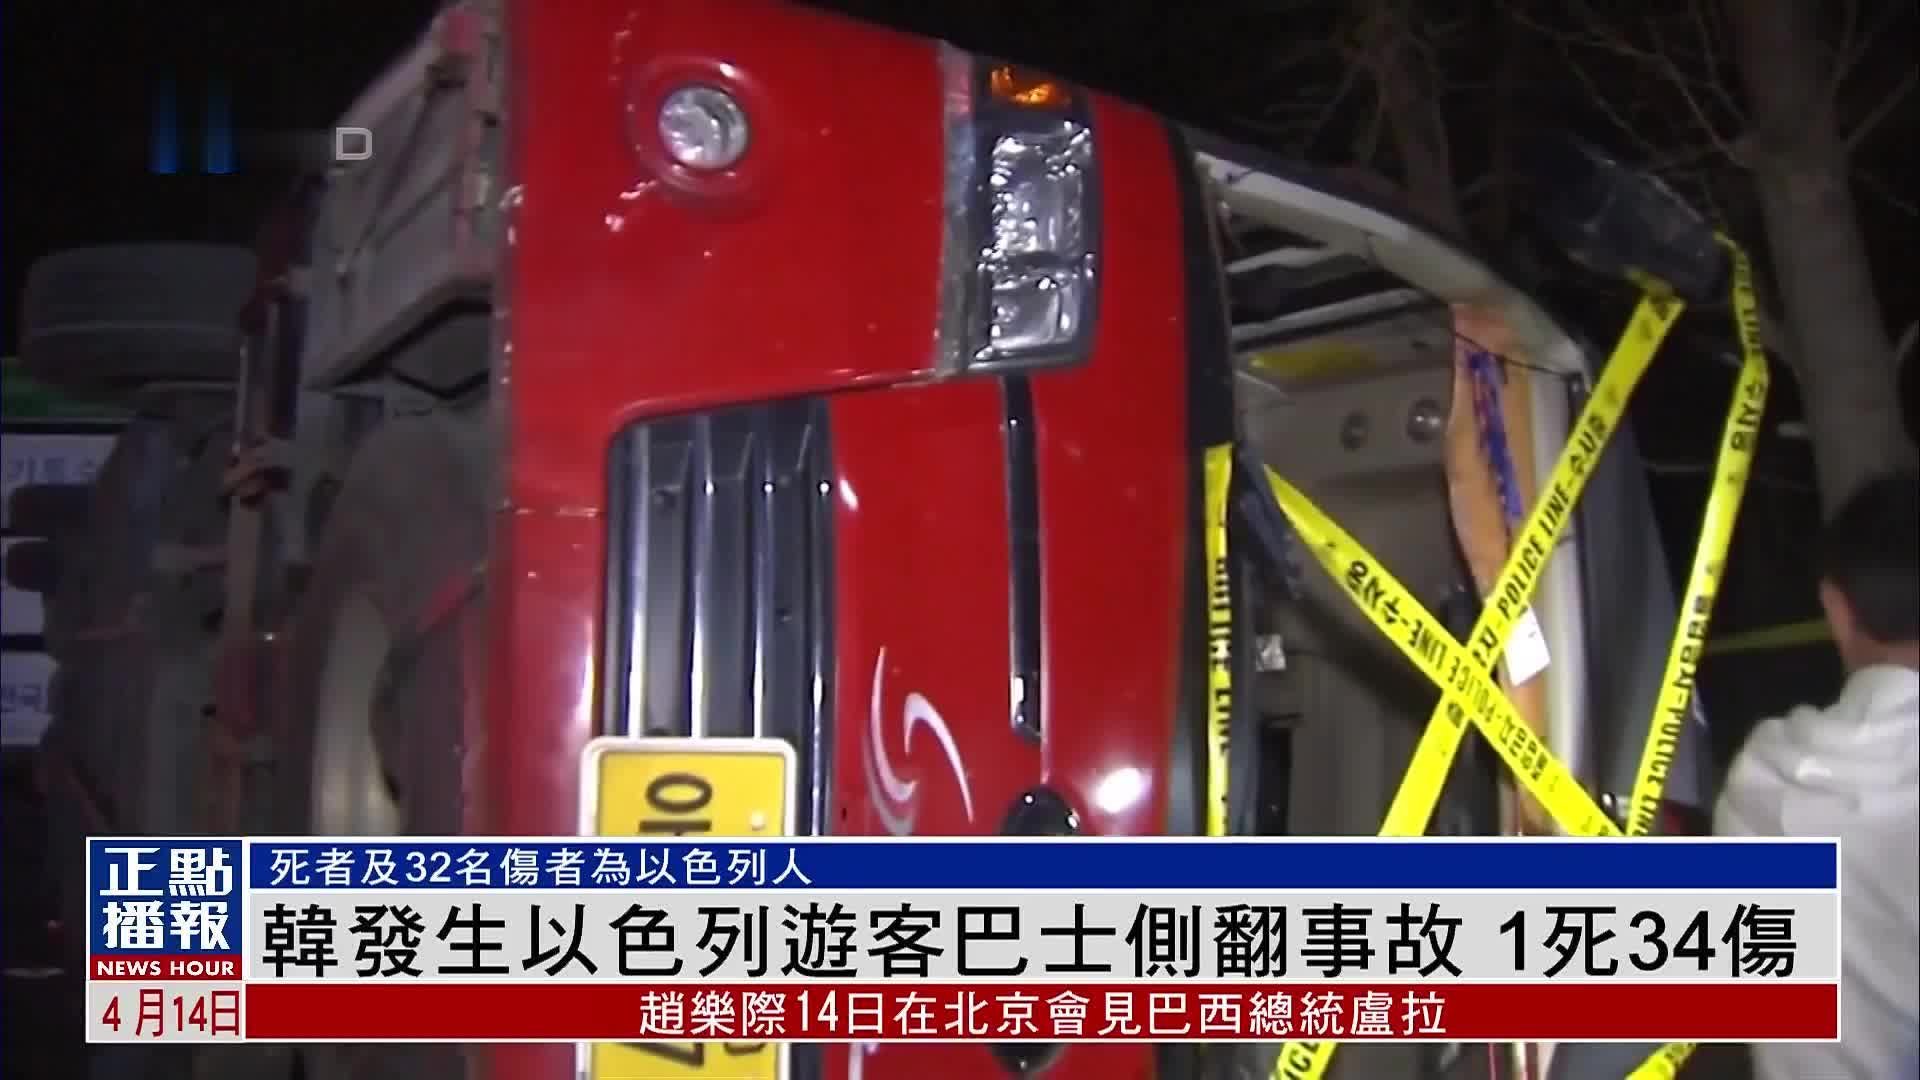 韩国发生以色列游客巴士侧翻事故 1死34伤